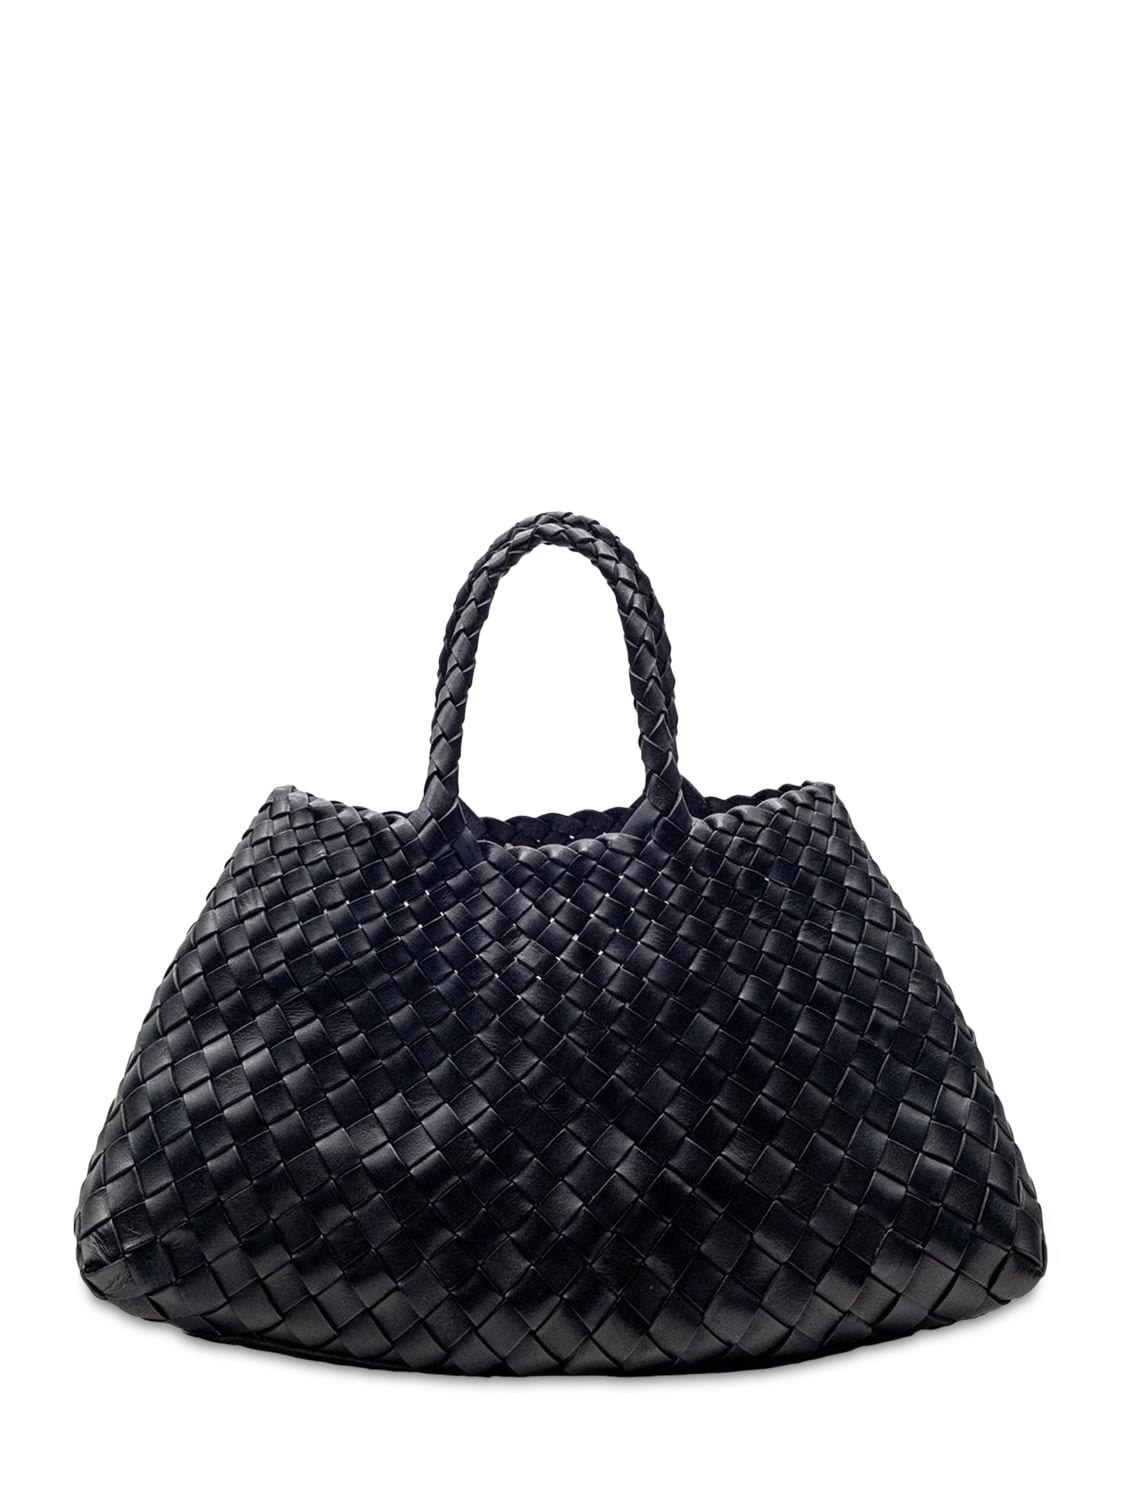 Dragon Diffusion Santa Croce Small Leather Bag In Black